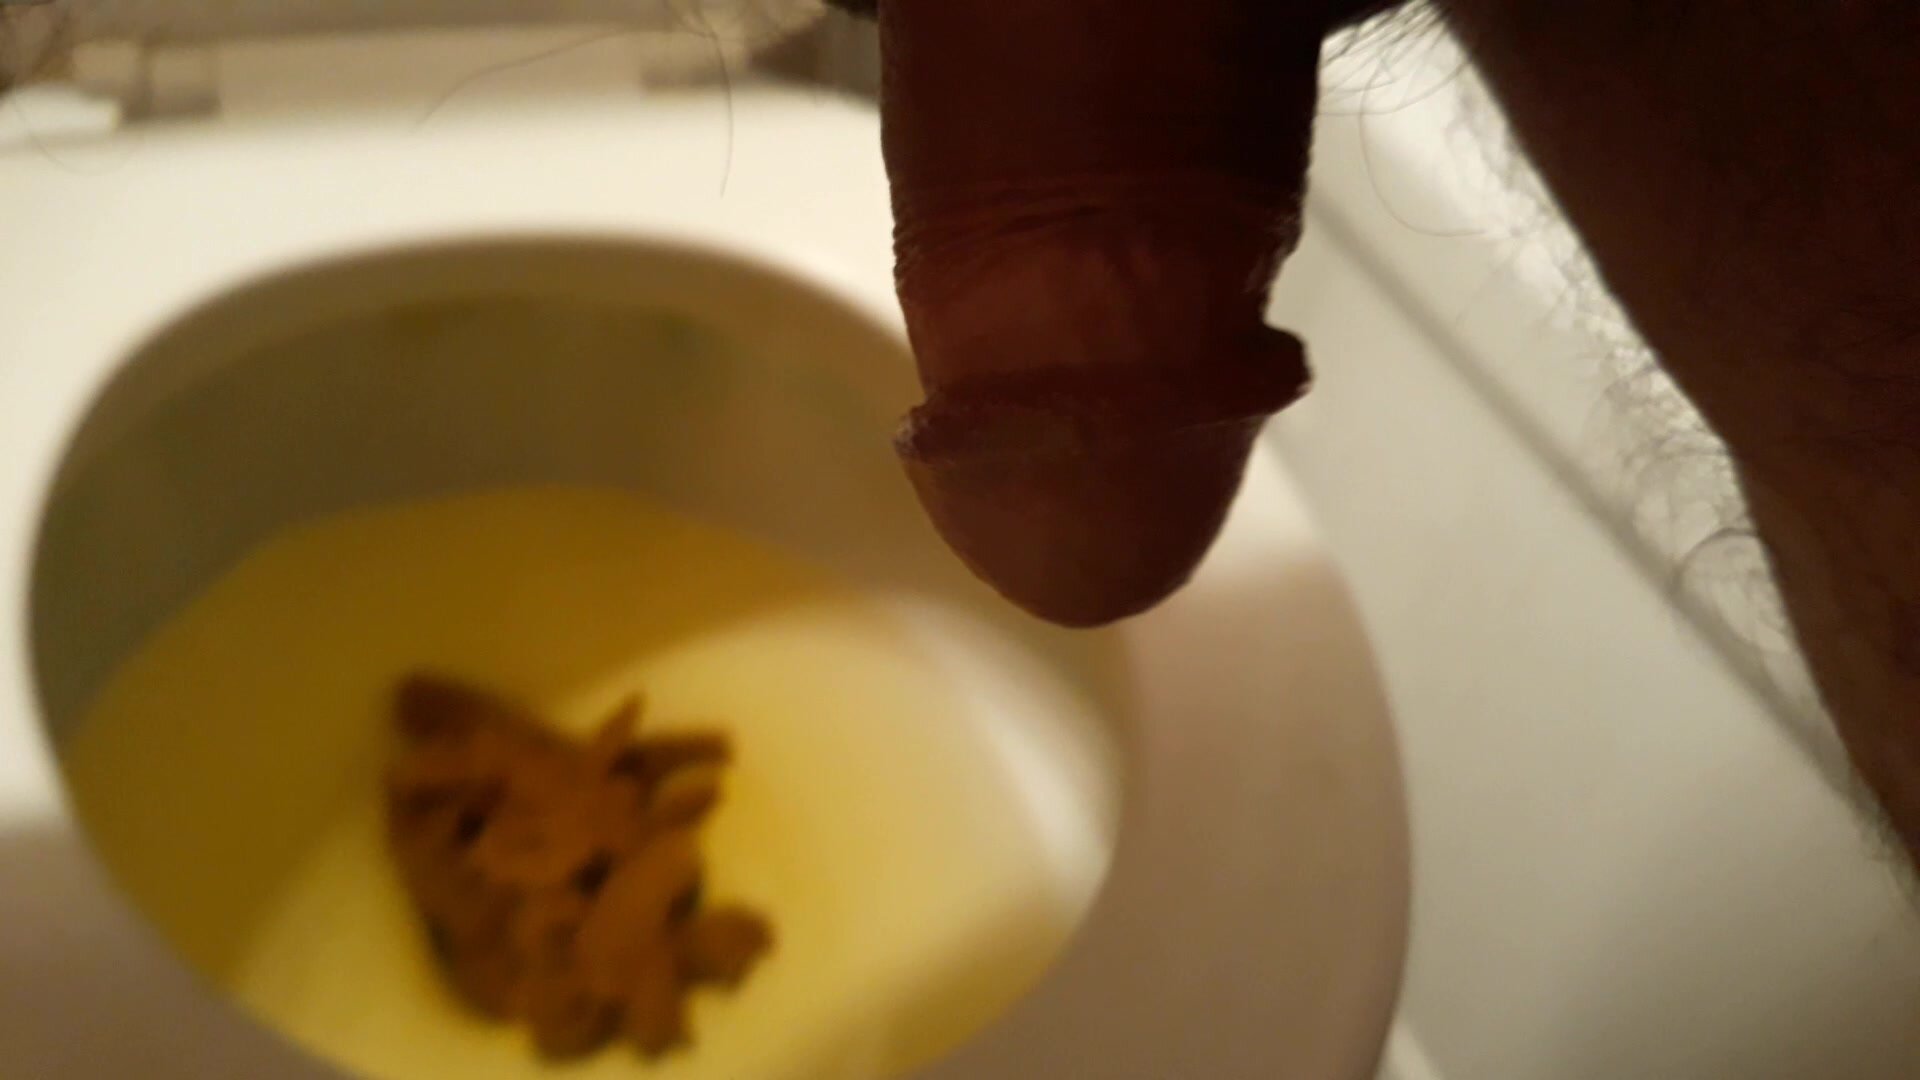 My poop - video 3